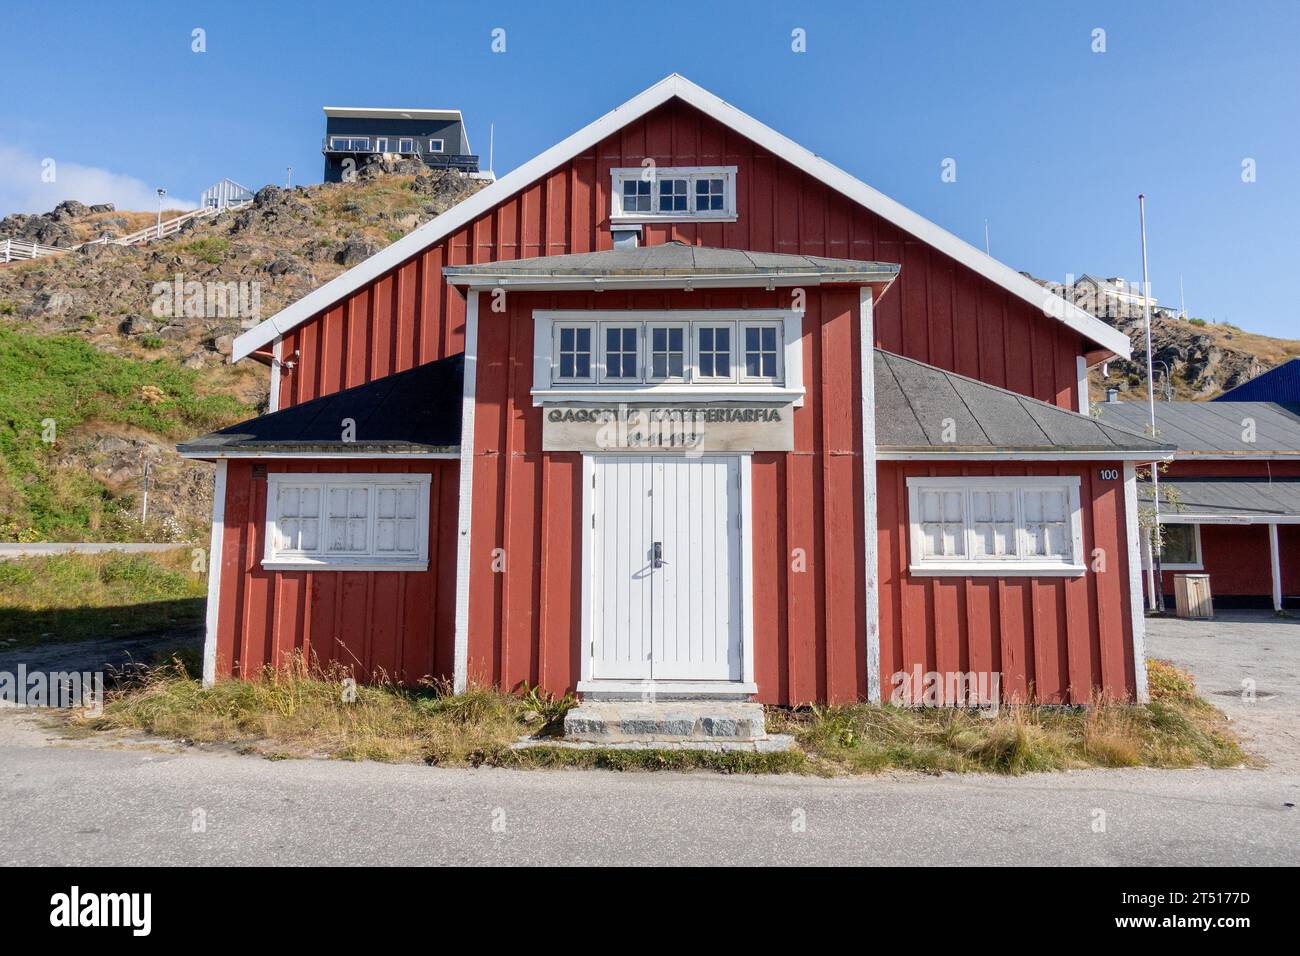 Qaqortoq Village Hall Qaqortoq, Südgrönland (Qaqortup Katersertarfia), Erbaut Im Jahr 1937, Außenansicht Des Roten Gebäudes Stockfoto